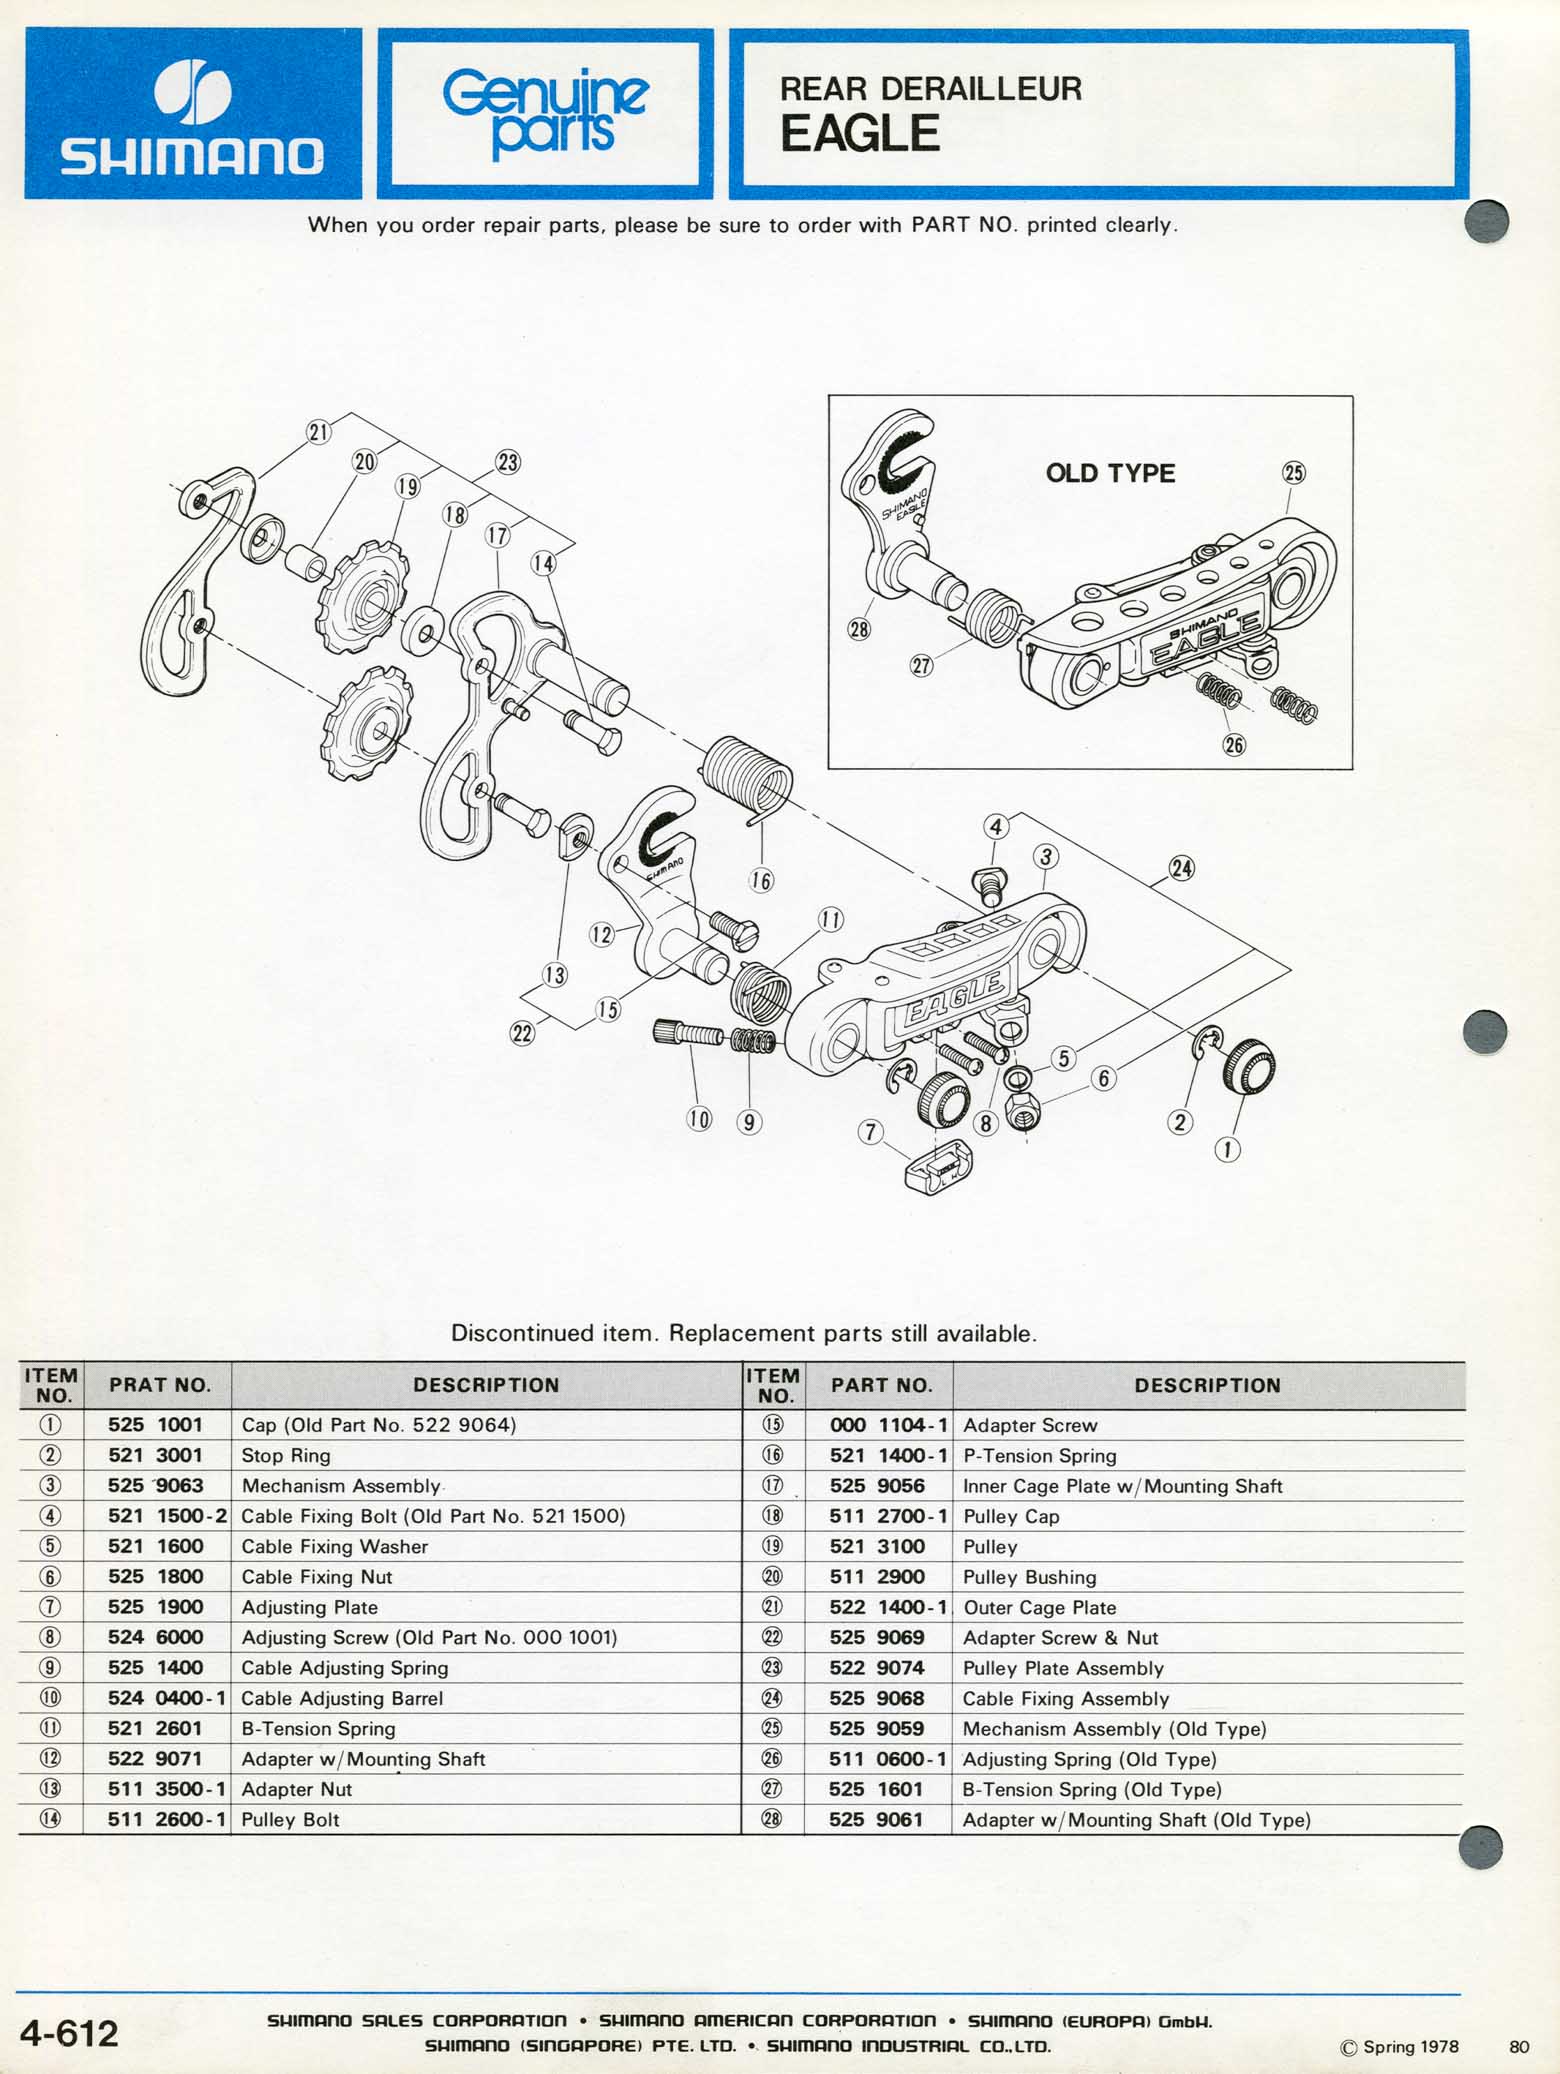 Shimano Bicycle Parts - 1978 scan 23 main image